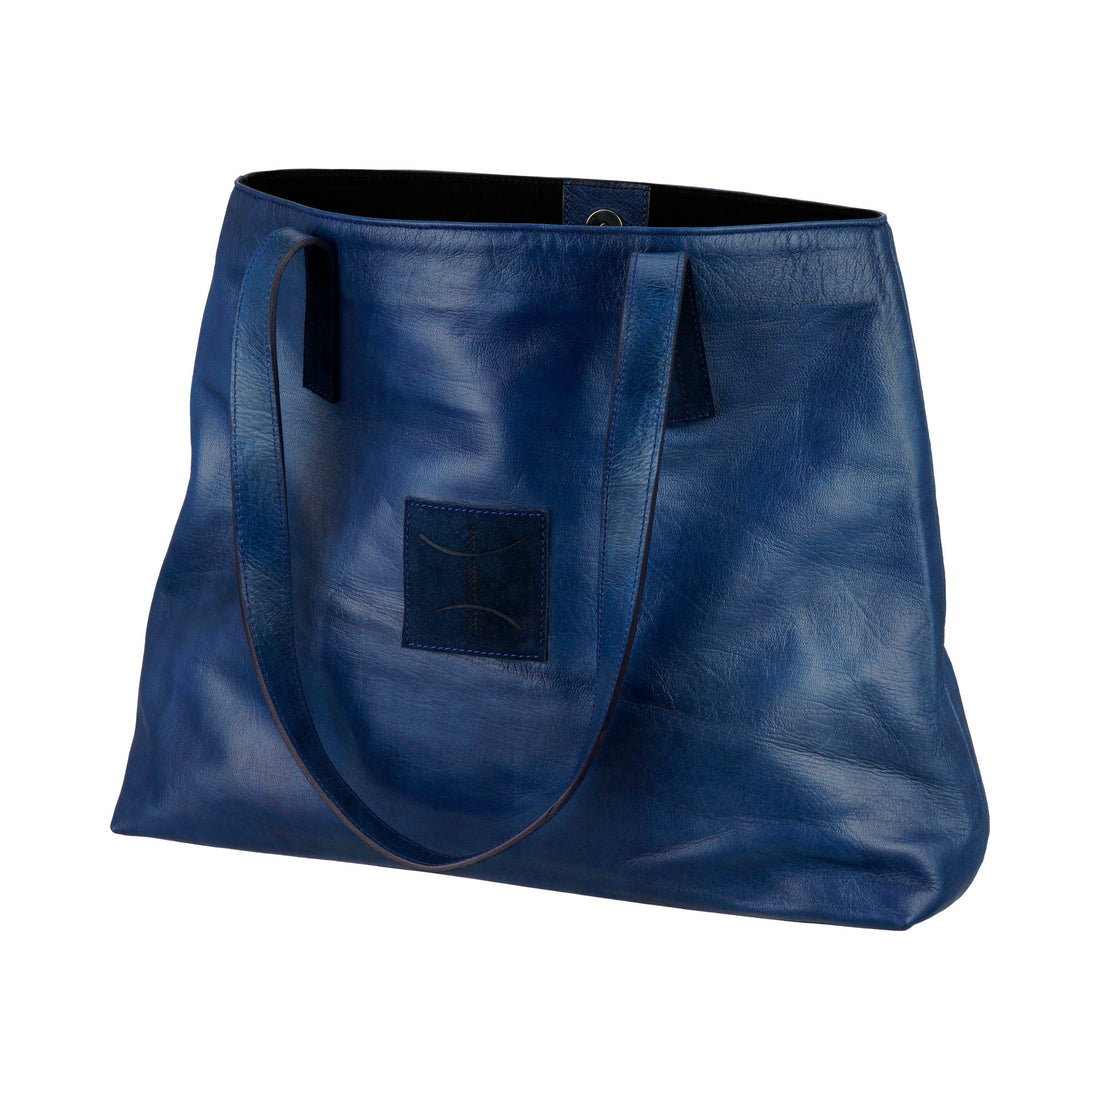 Berber Leather Shopping Bag in Blue Indigo: Stylish functionality, Handmade leather craftsmanship, Timeless indigo charm.